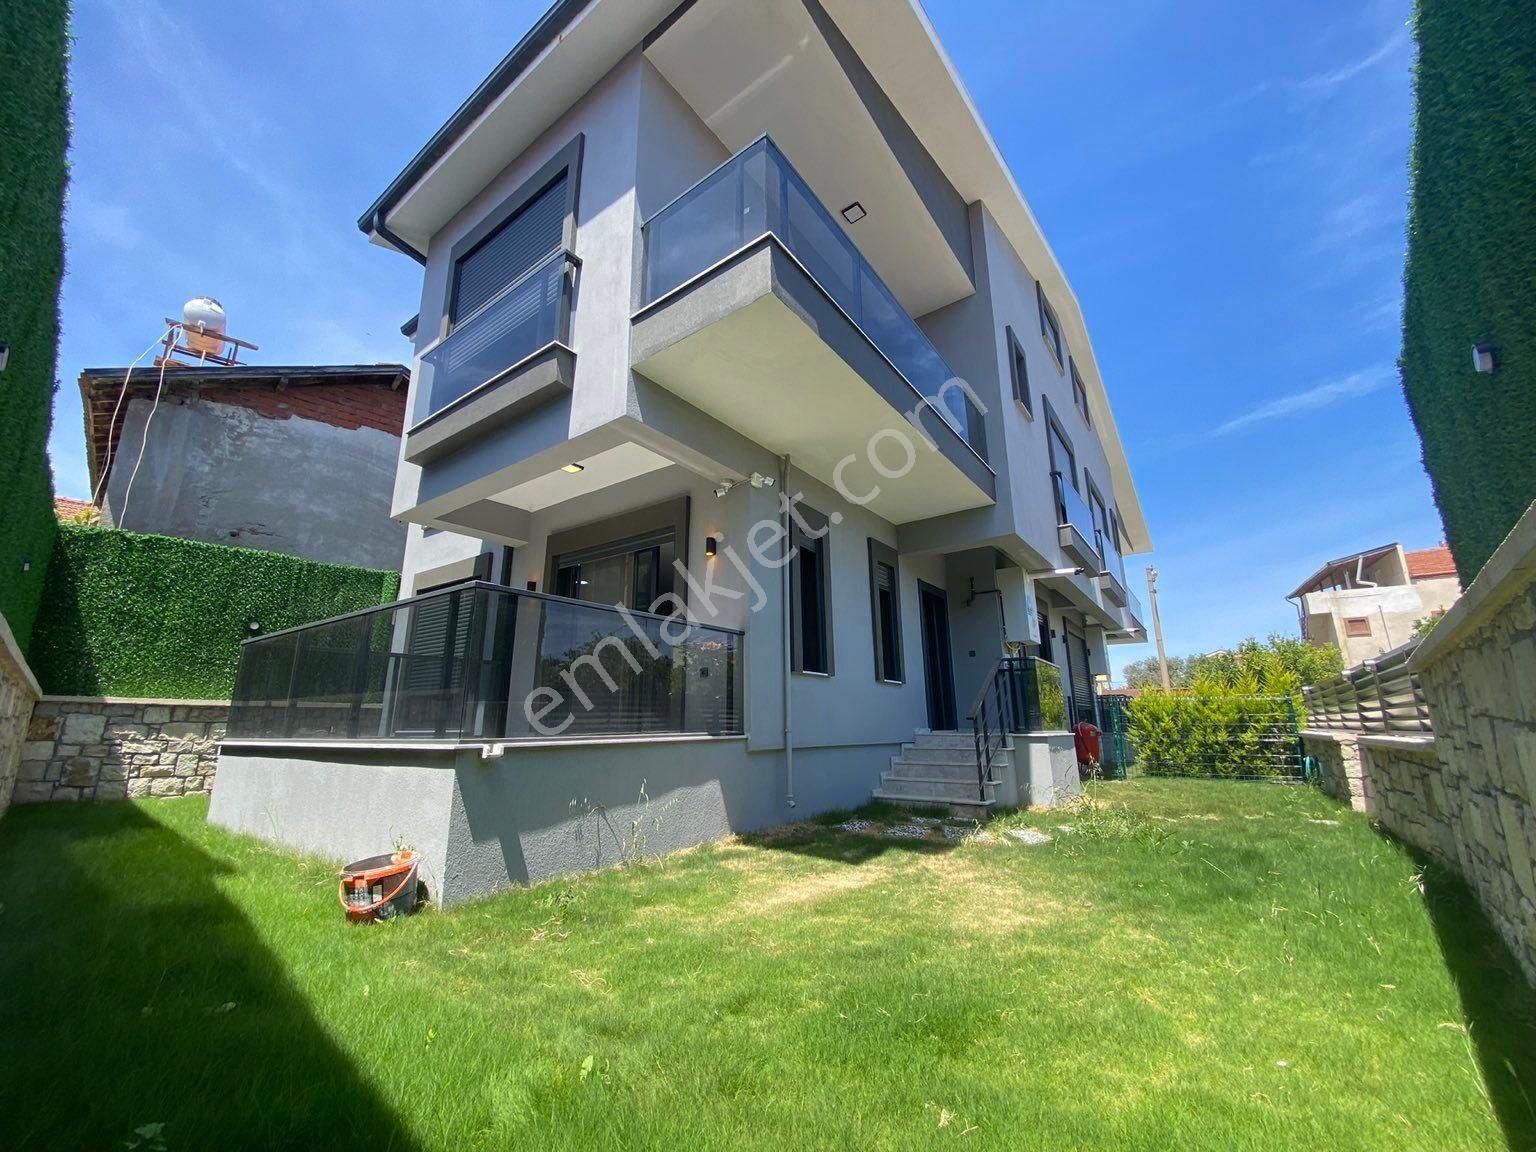 Urla Güvendik Satılık Villa VİMAX’DAN URLA ÇEŞMEALTI SATILIK LÜKS VİLLA